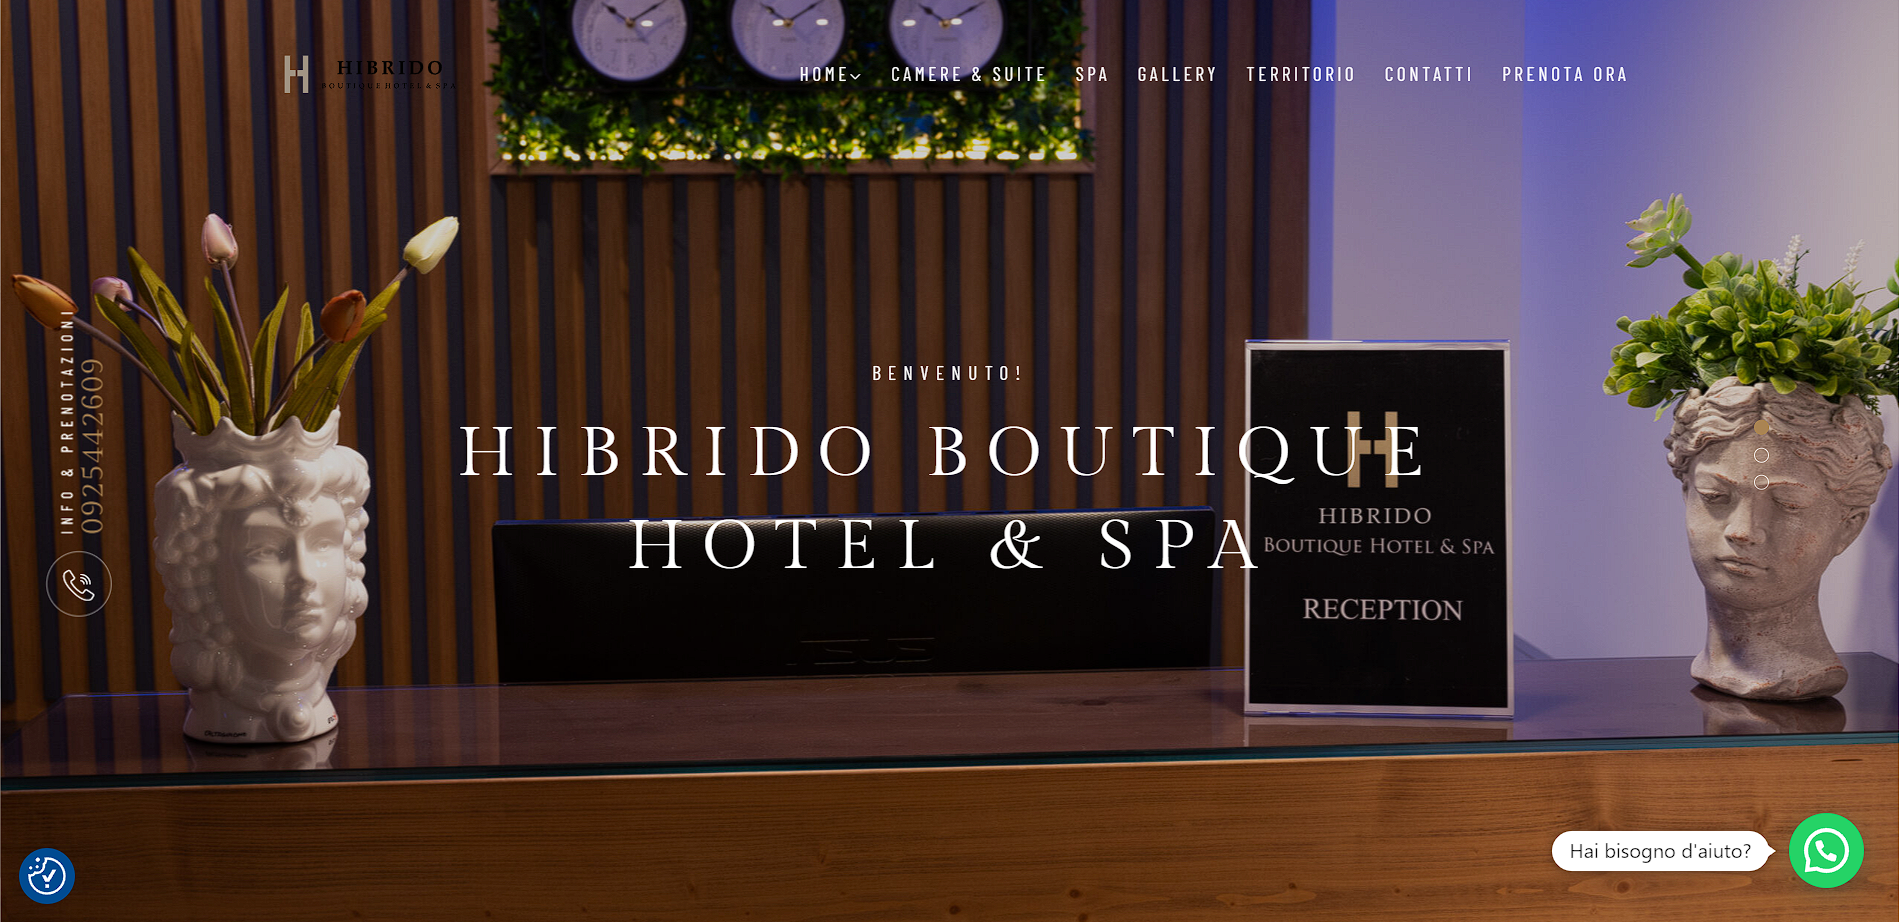 Hibrido Boutique Hotel